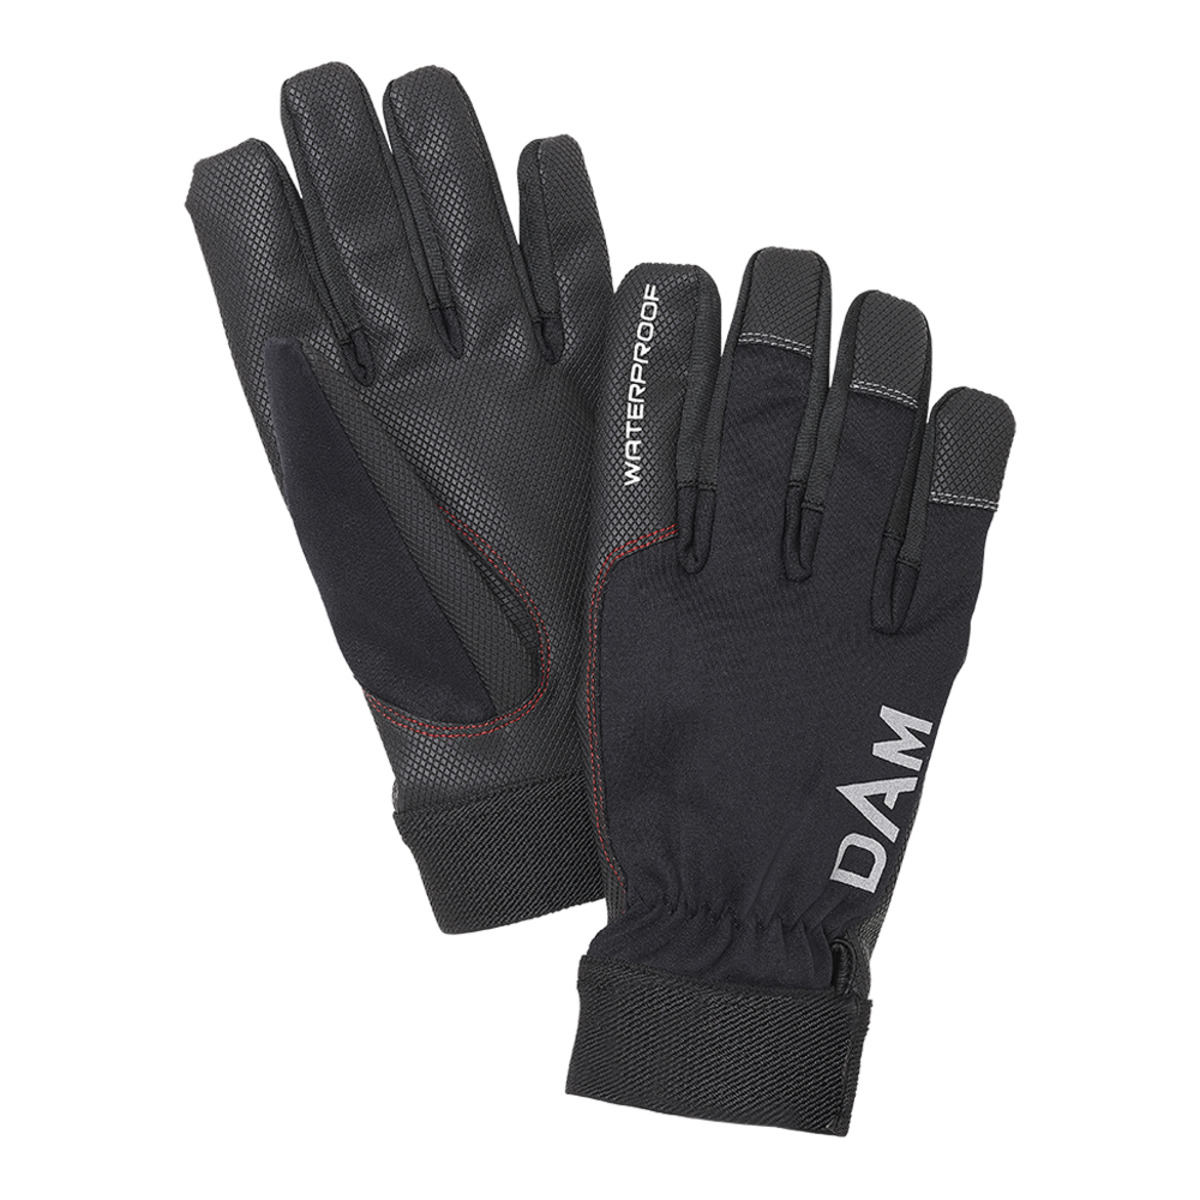 Dam Dryzone Glove - XL BLACK